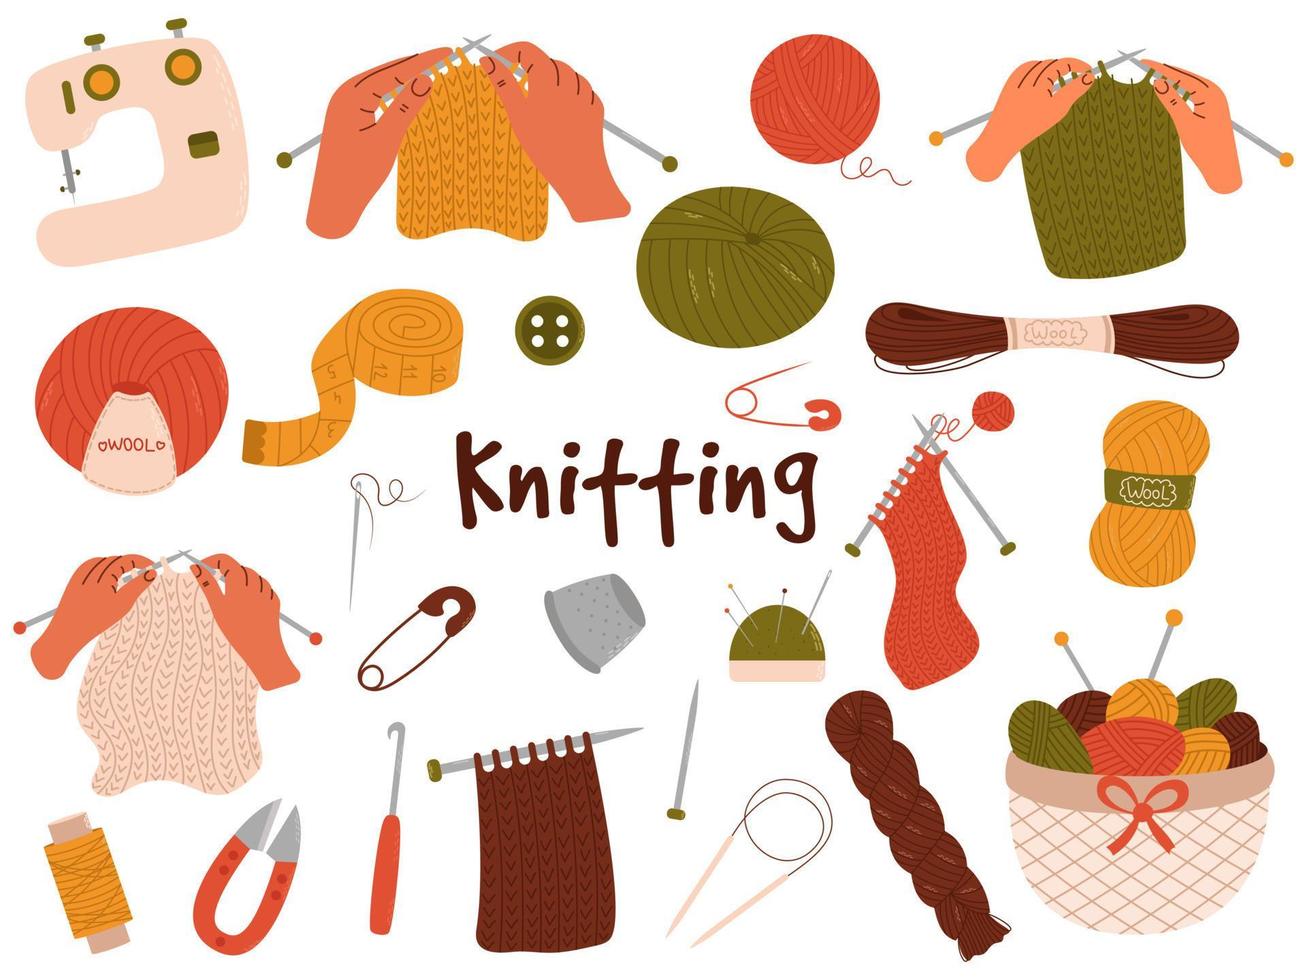 ensemble de vecteurs dessinés à la main d'outils de tricot. fils de laine, crochet, aiguilles à tricoter, barre à aiguille, panier à fil. vecteur